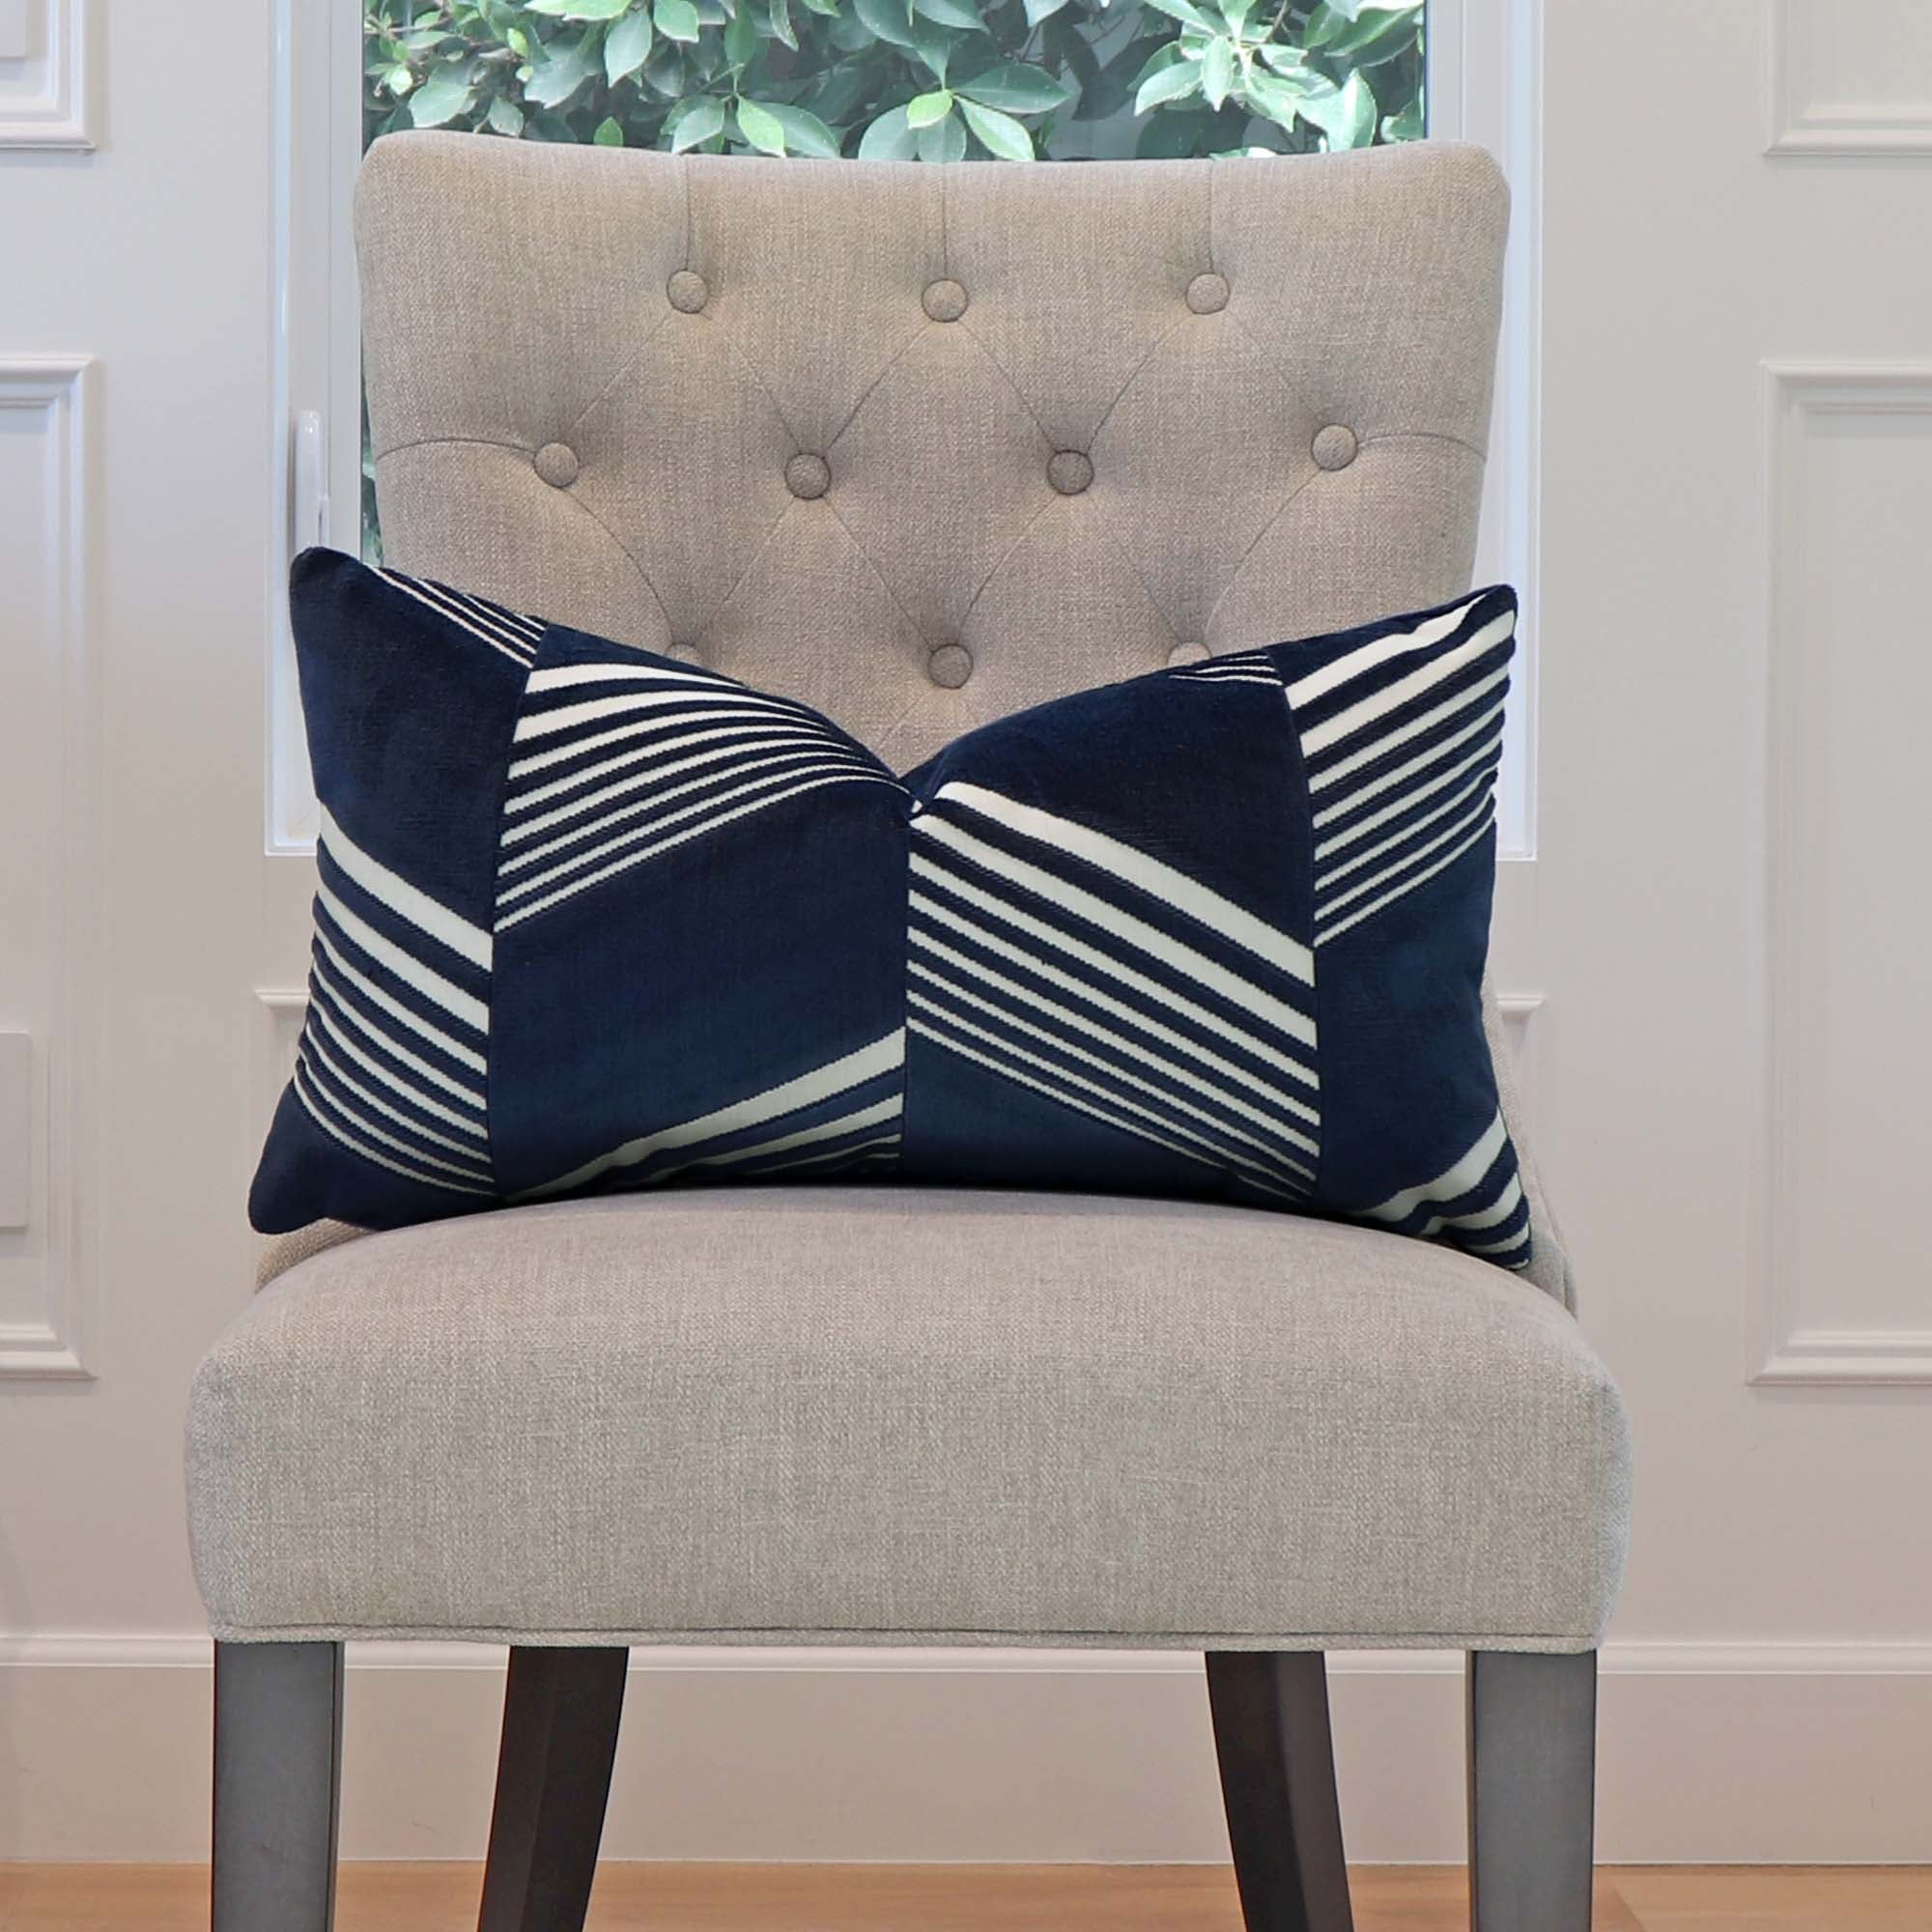 Schumacher Jessie Cut Velvet Navy Blue Designer Decorative Lumbar Throw Pillow Cover on Armless Chair